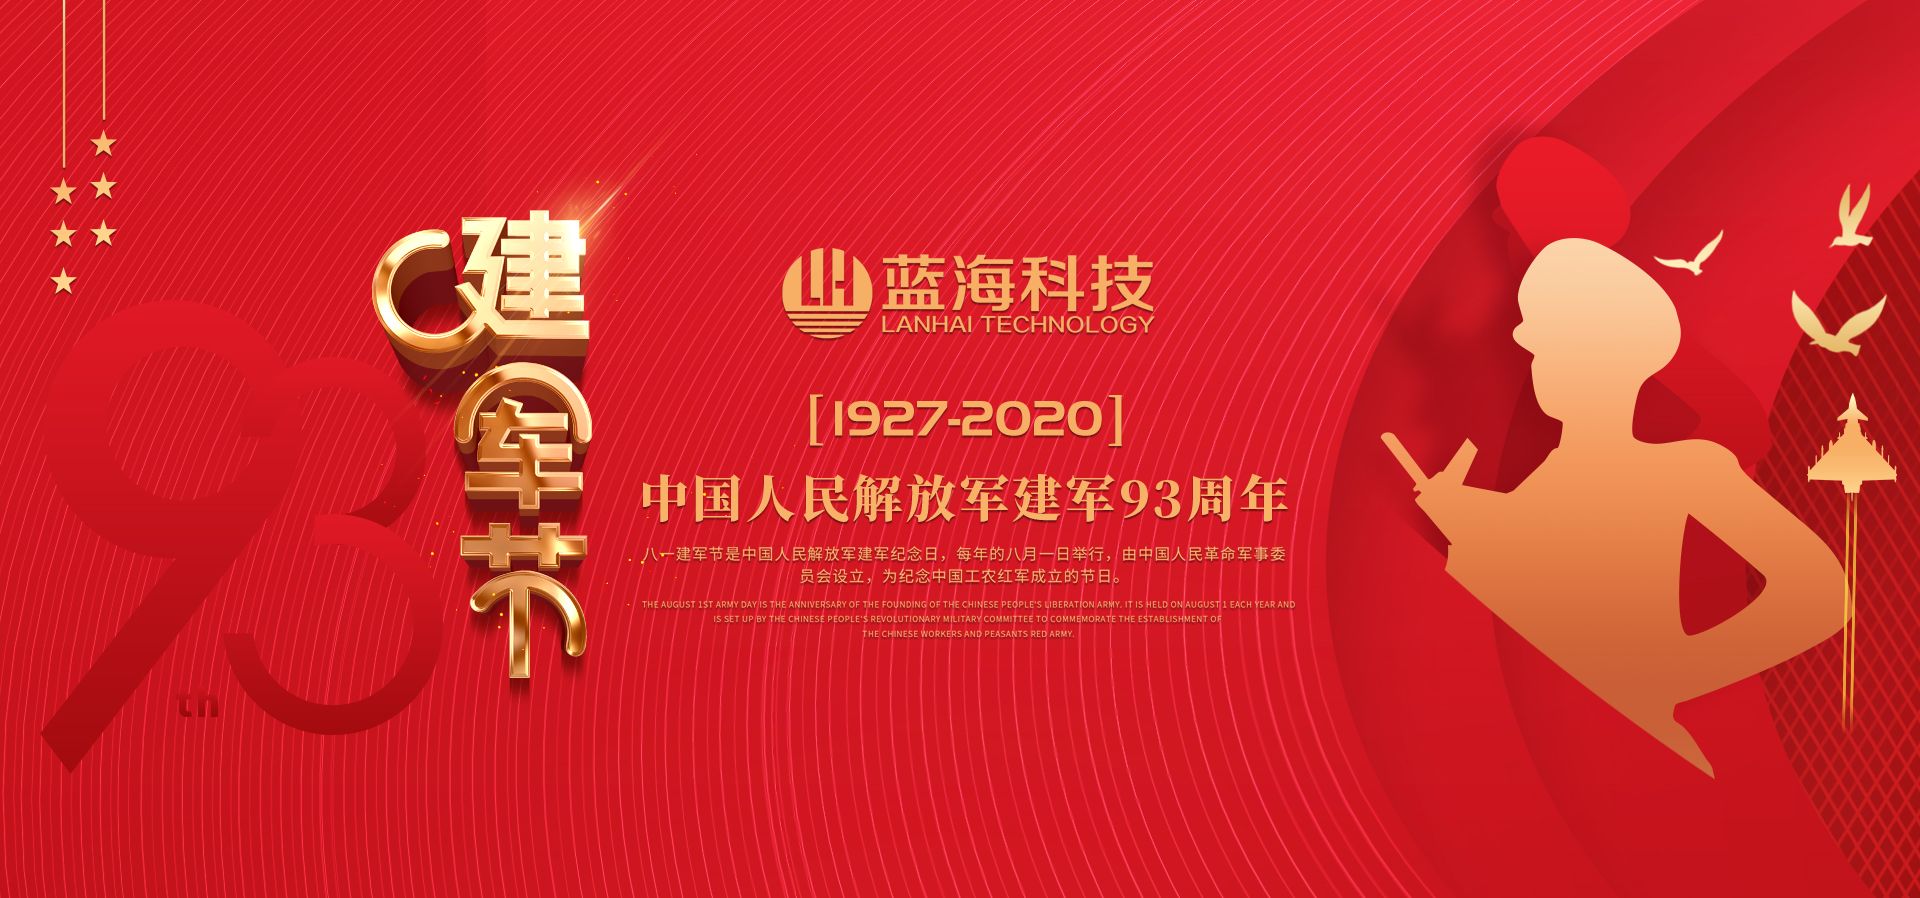 蓝海环境科技--热烈祝贺中国人民解放军成立93周年